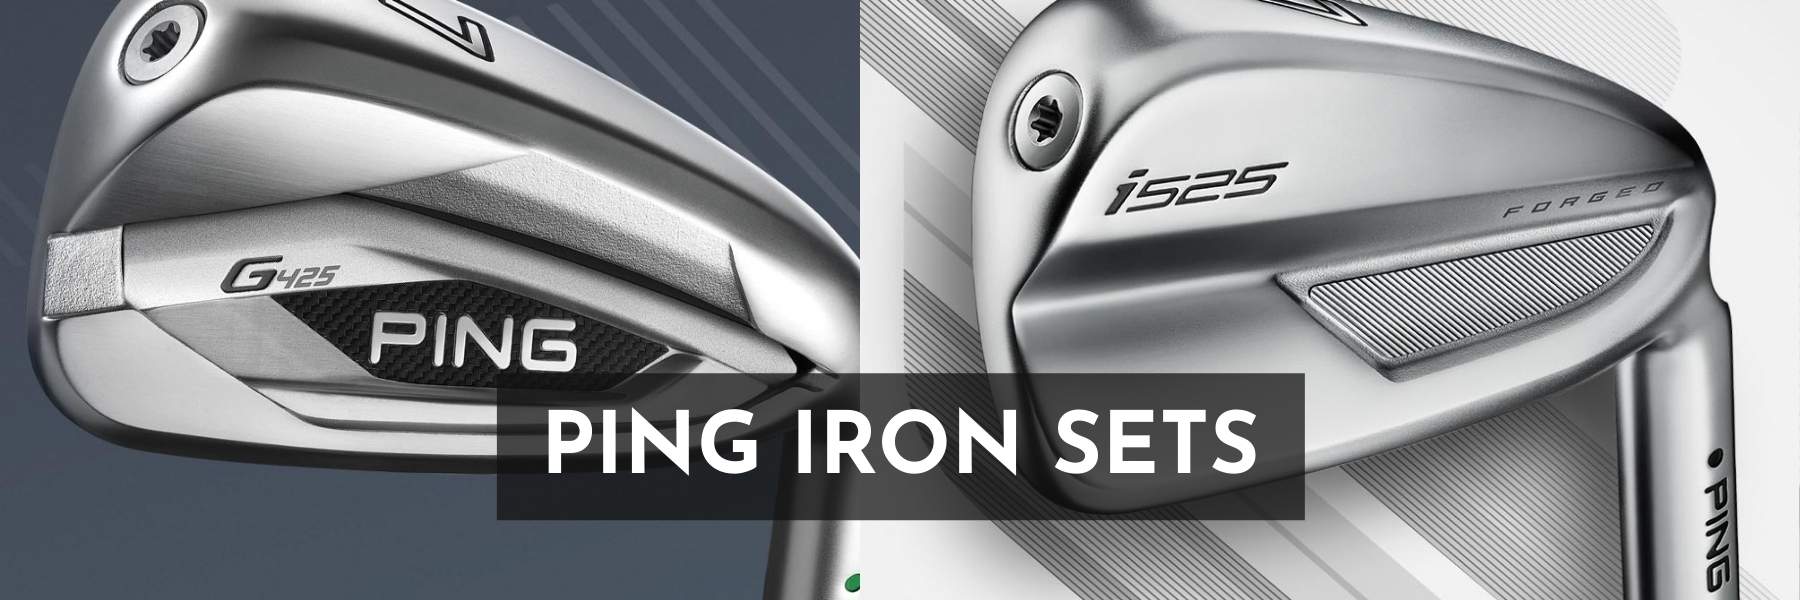 Ping Iron Sets Header